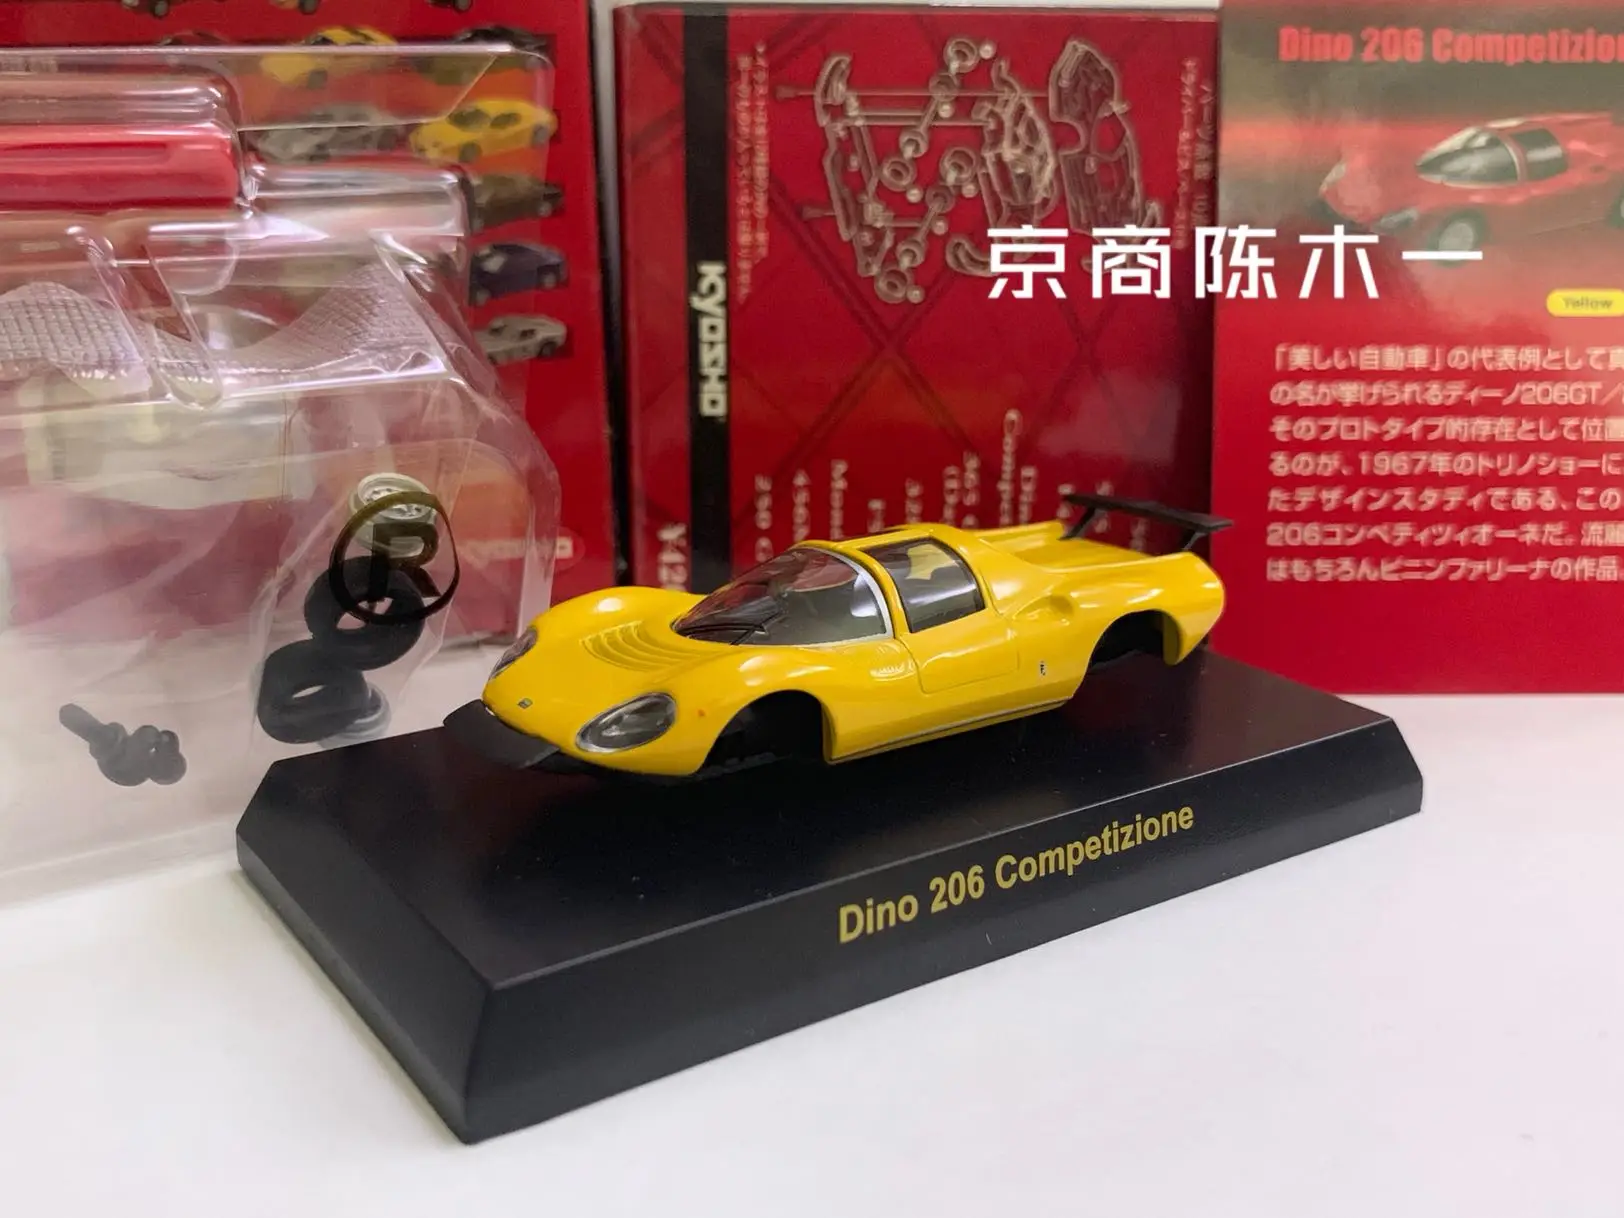 

Коллекция игрушечных моделей автомобилей KYOSHO Ferrari Dino 1/64, коллекция игрушек желтого цвета из литого сплава, в сборе, 206